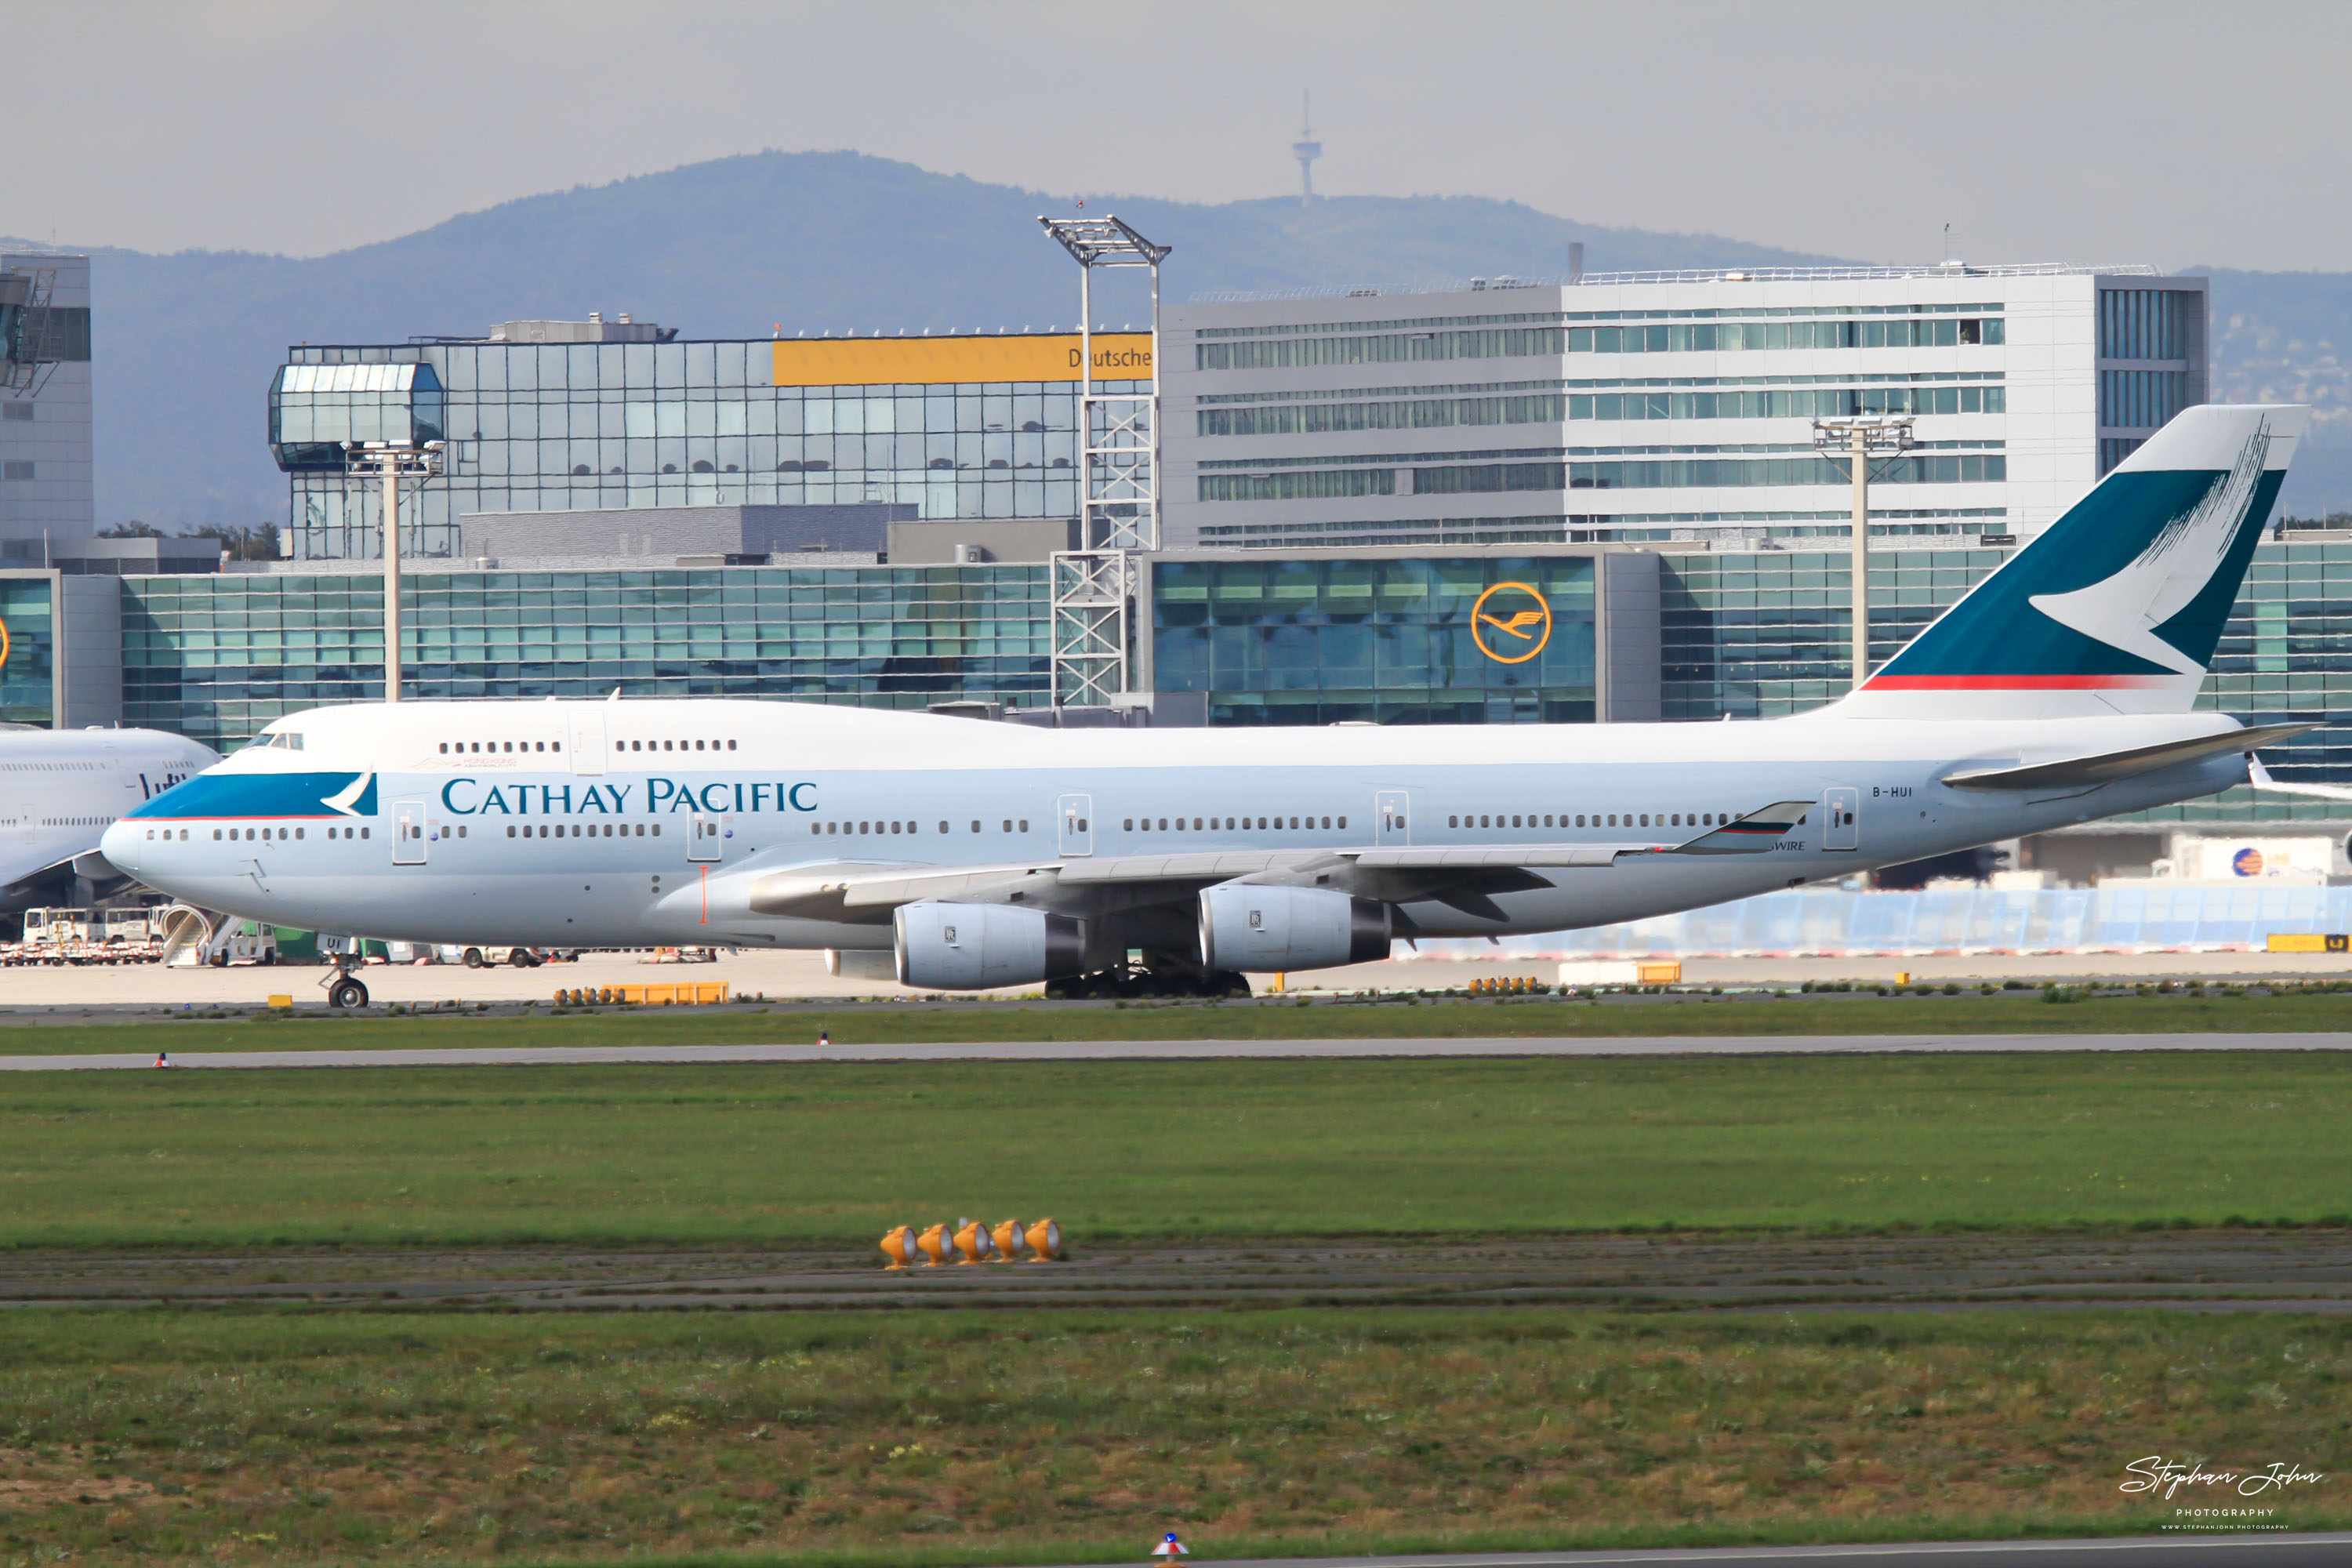 Boeing 747-467 (B744) von Cathay Pacific. Das Flugzeug ist inaktiv. Der Erstflug war im Juni 1994.